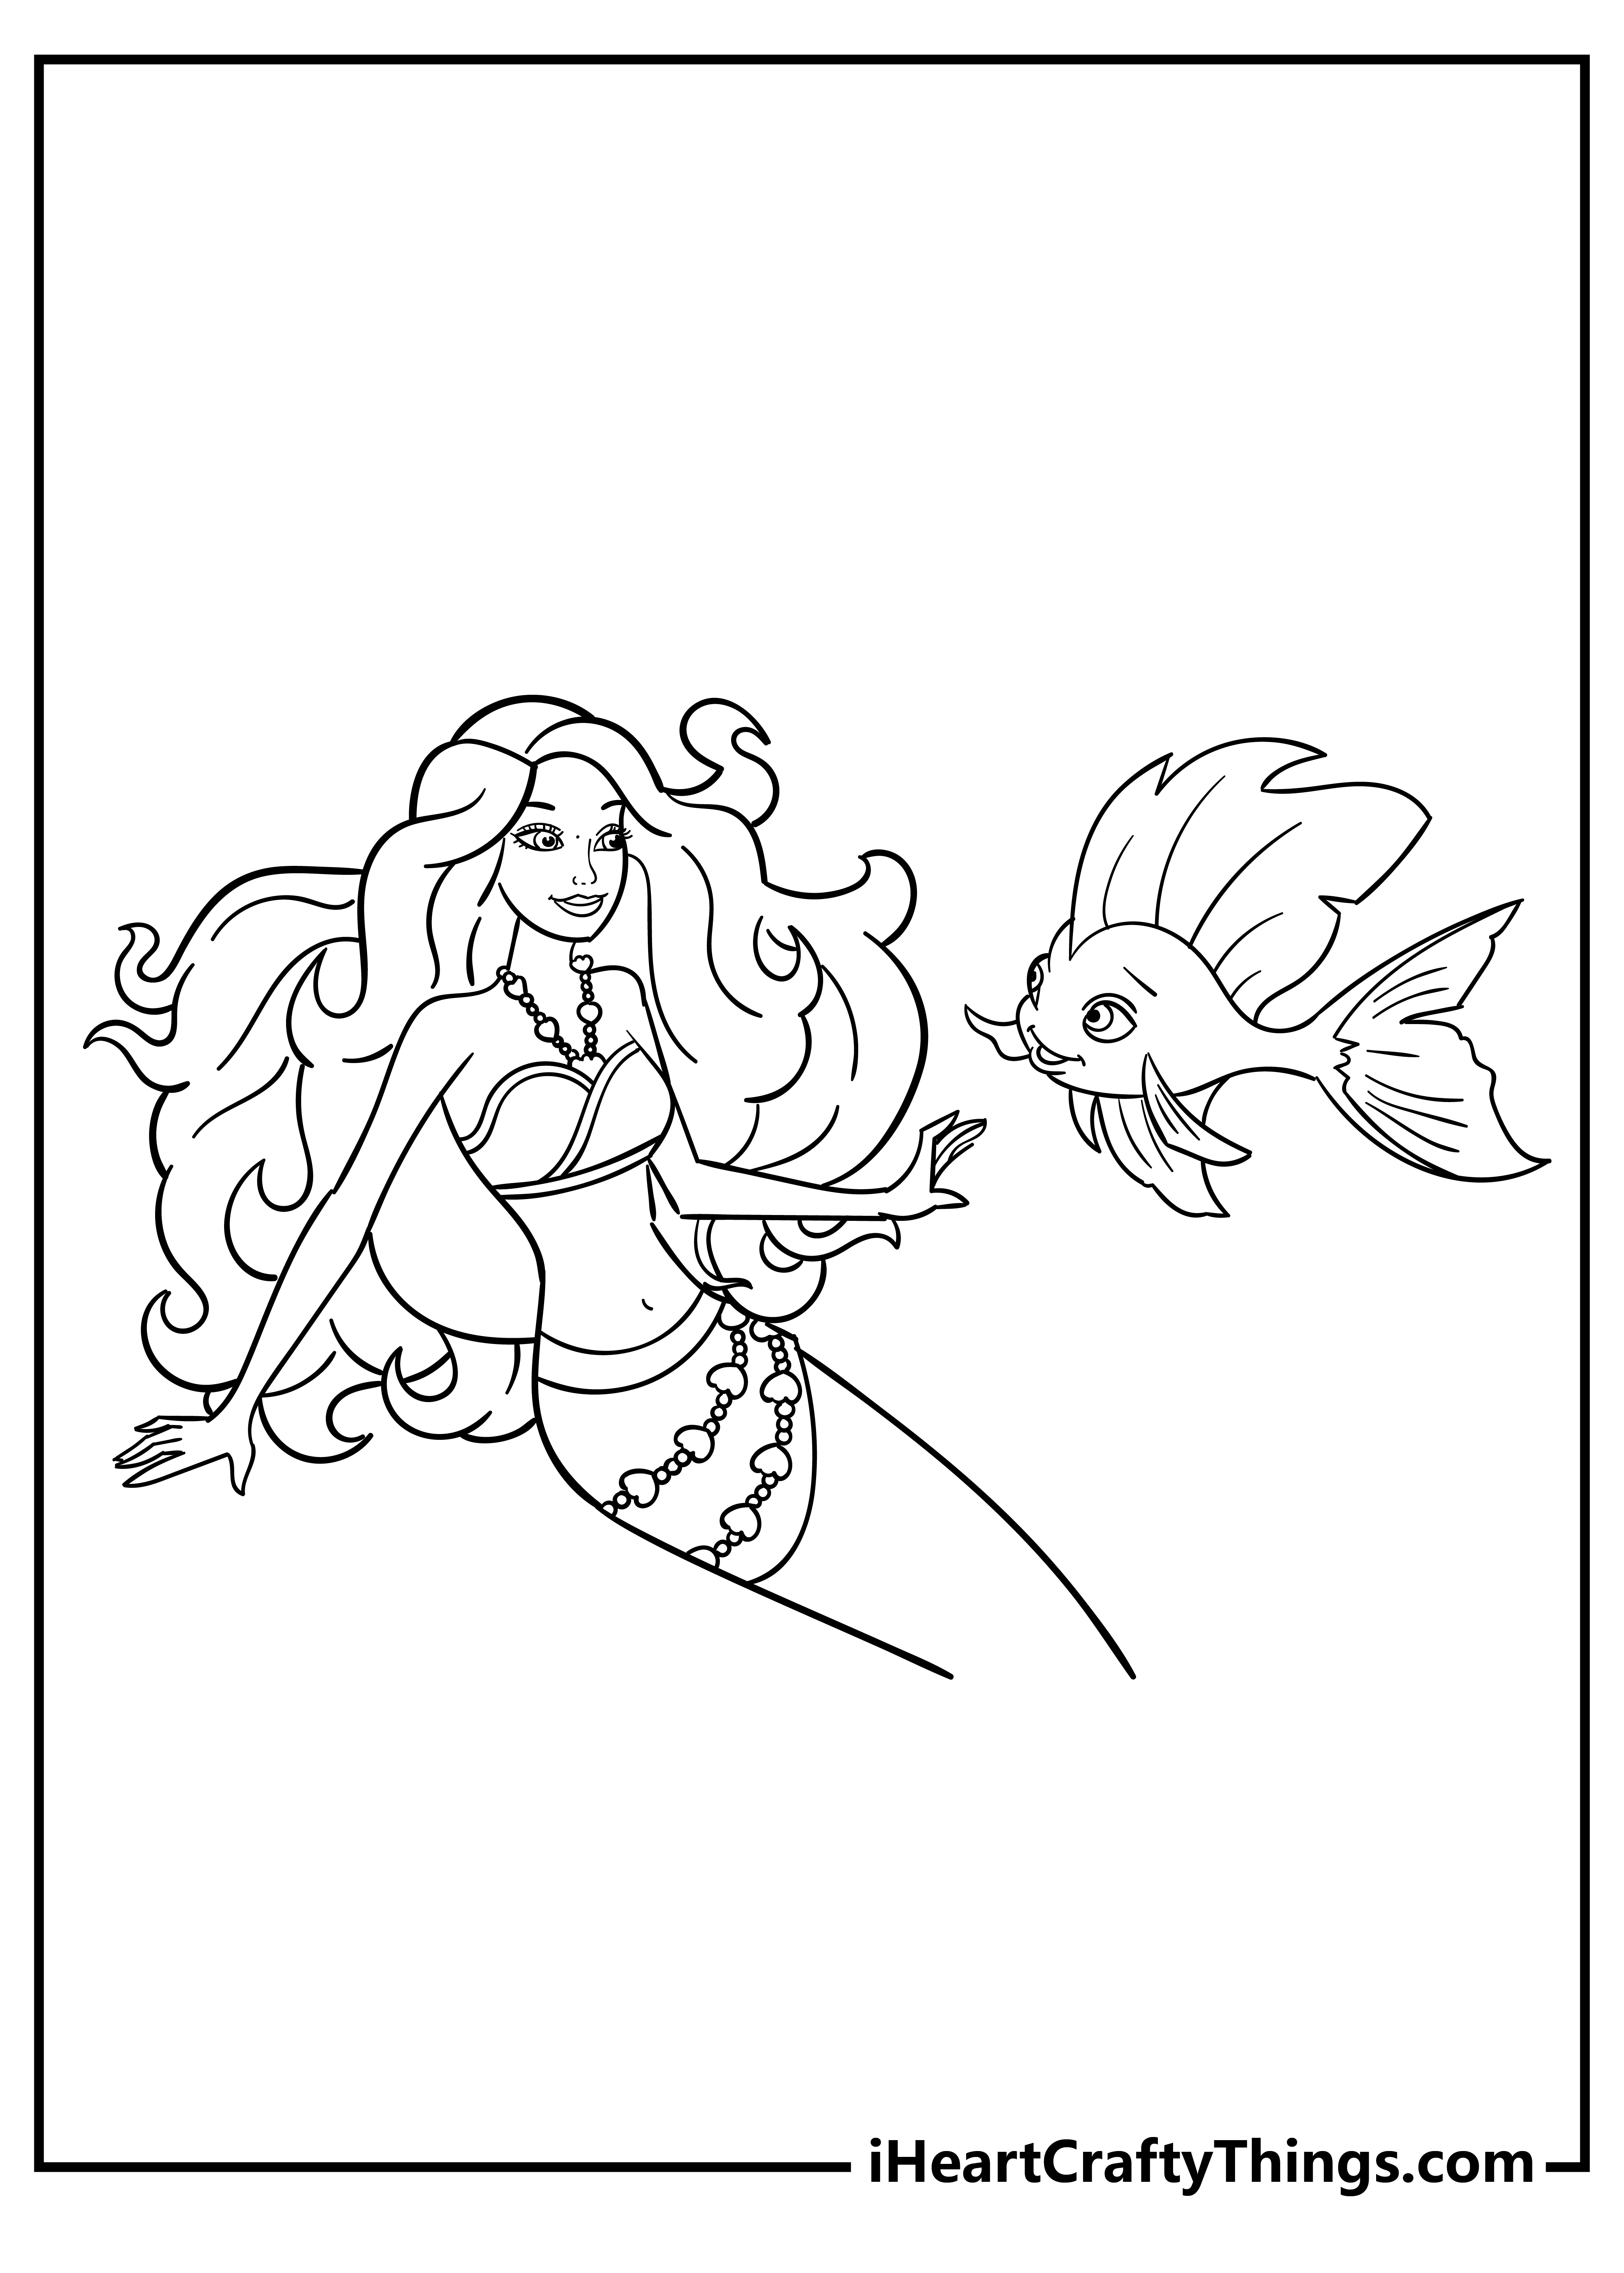 Barbie Mermaid Coloring Original Sheet for children free download